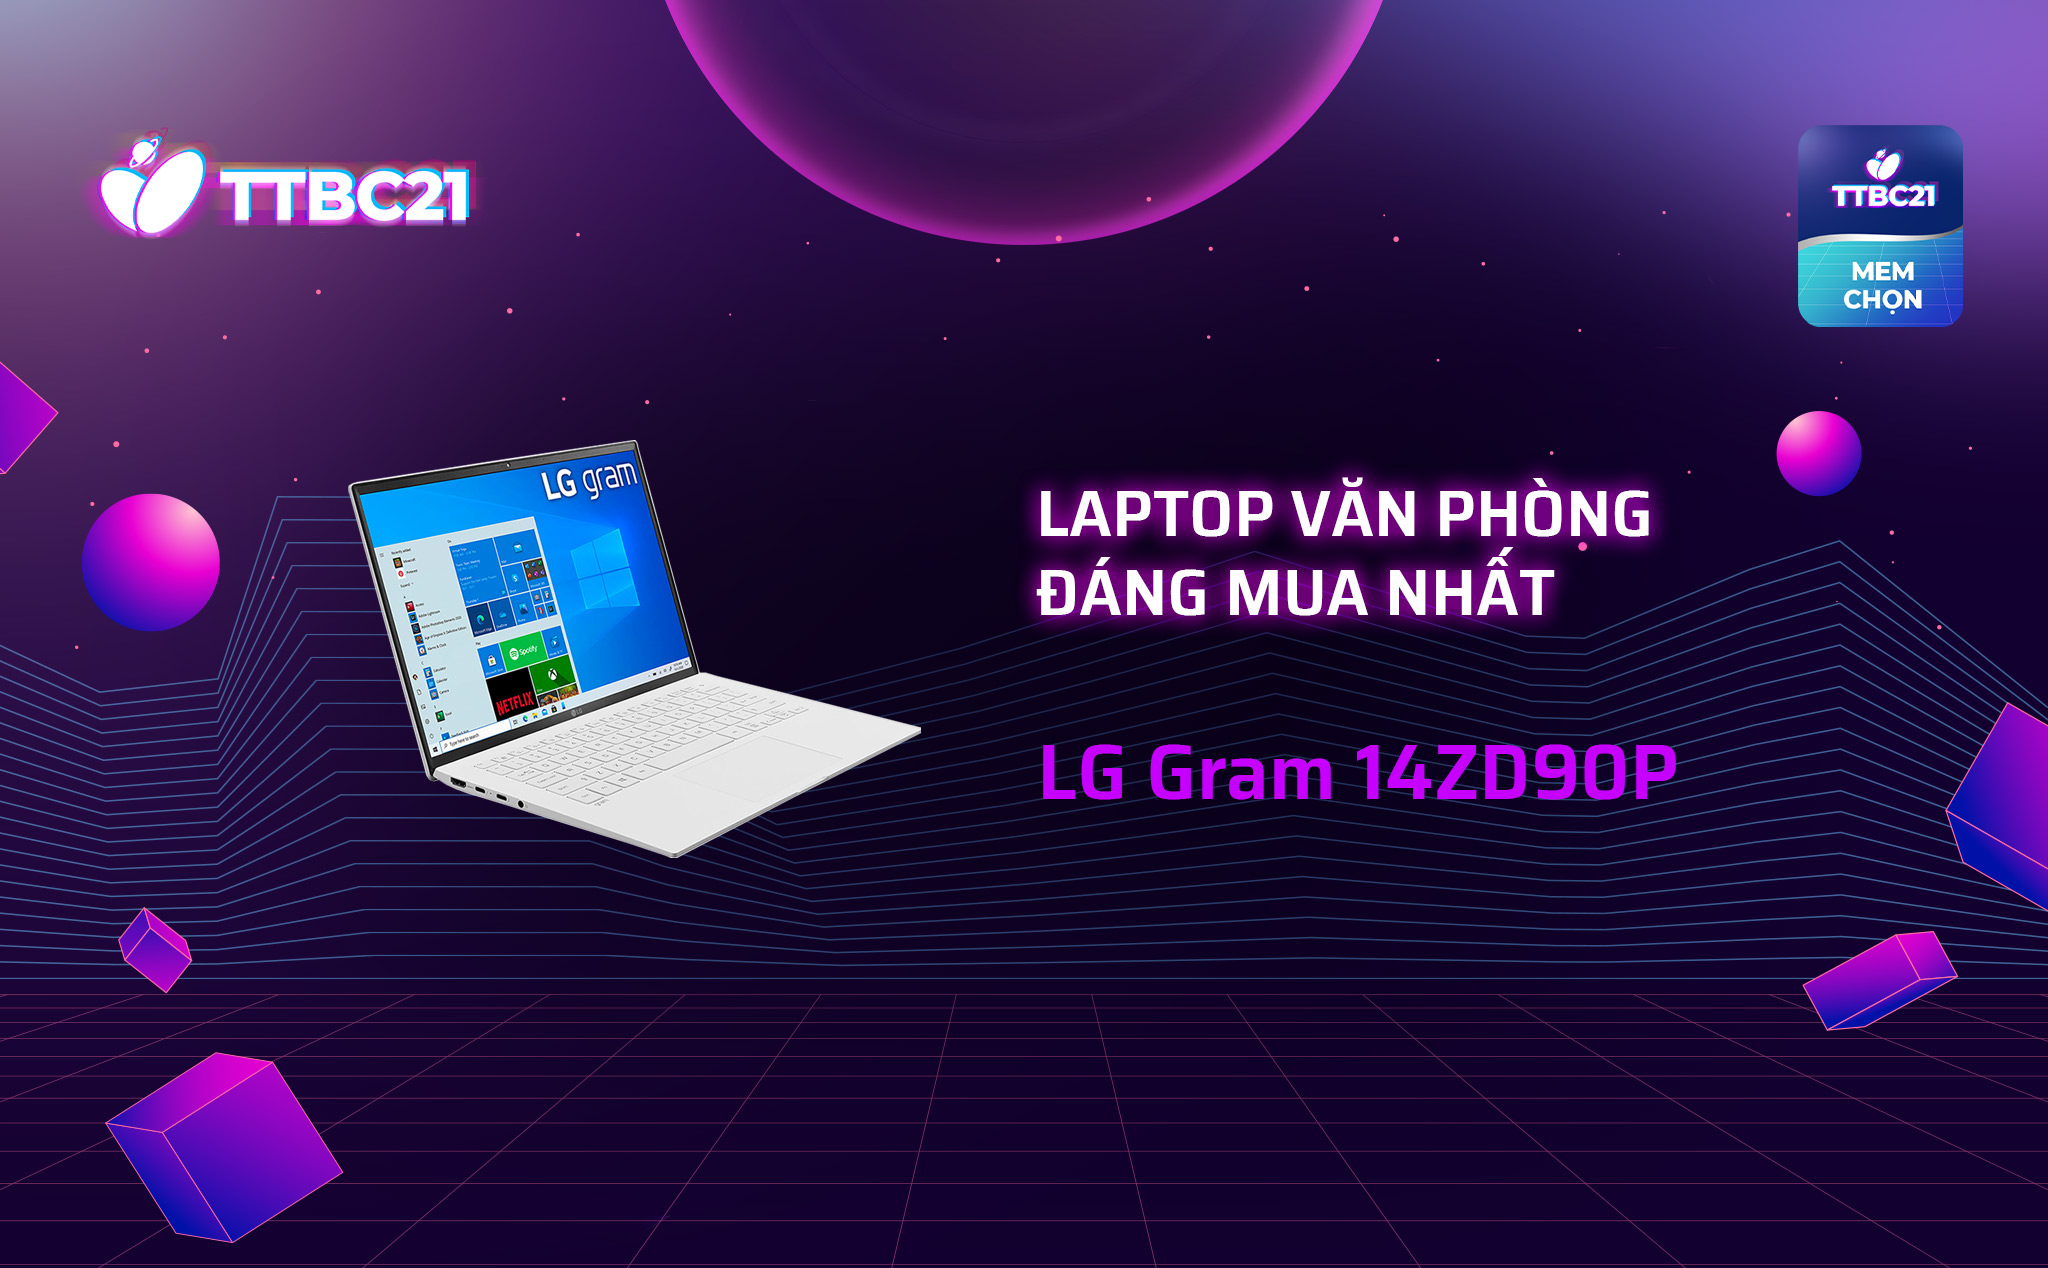 Laptop văn phòng đáng mua nhất - LG Gram 14ZD90P.jpg